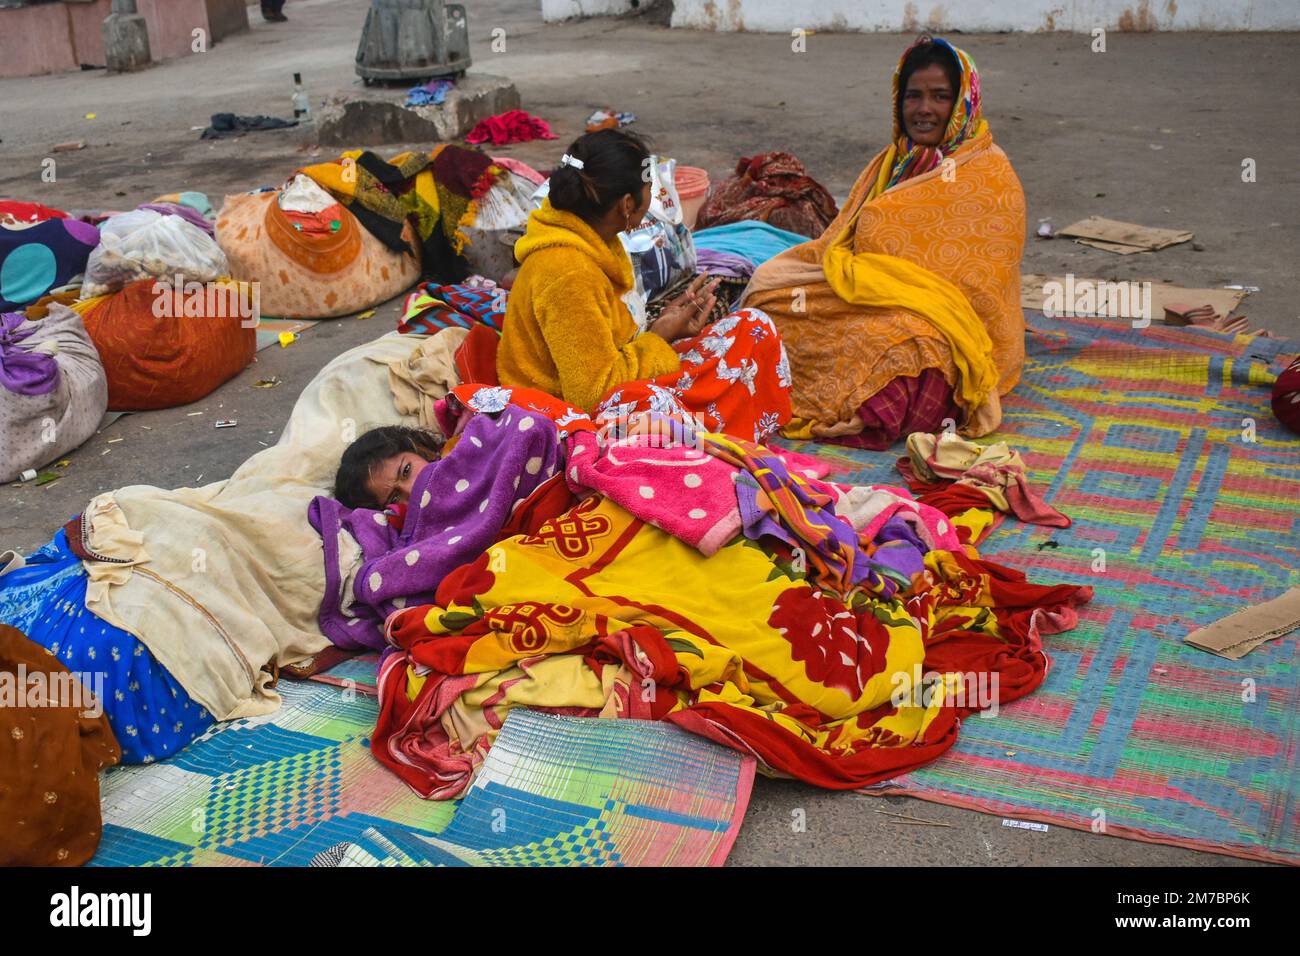 Menschen, die in Decken eingewickelt sind, schlafen an einem kalten Wintermorgen in Kalkutta am Straßenrand. Stockfoto